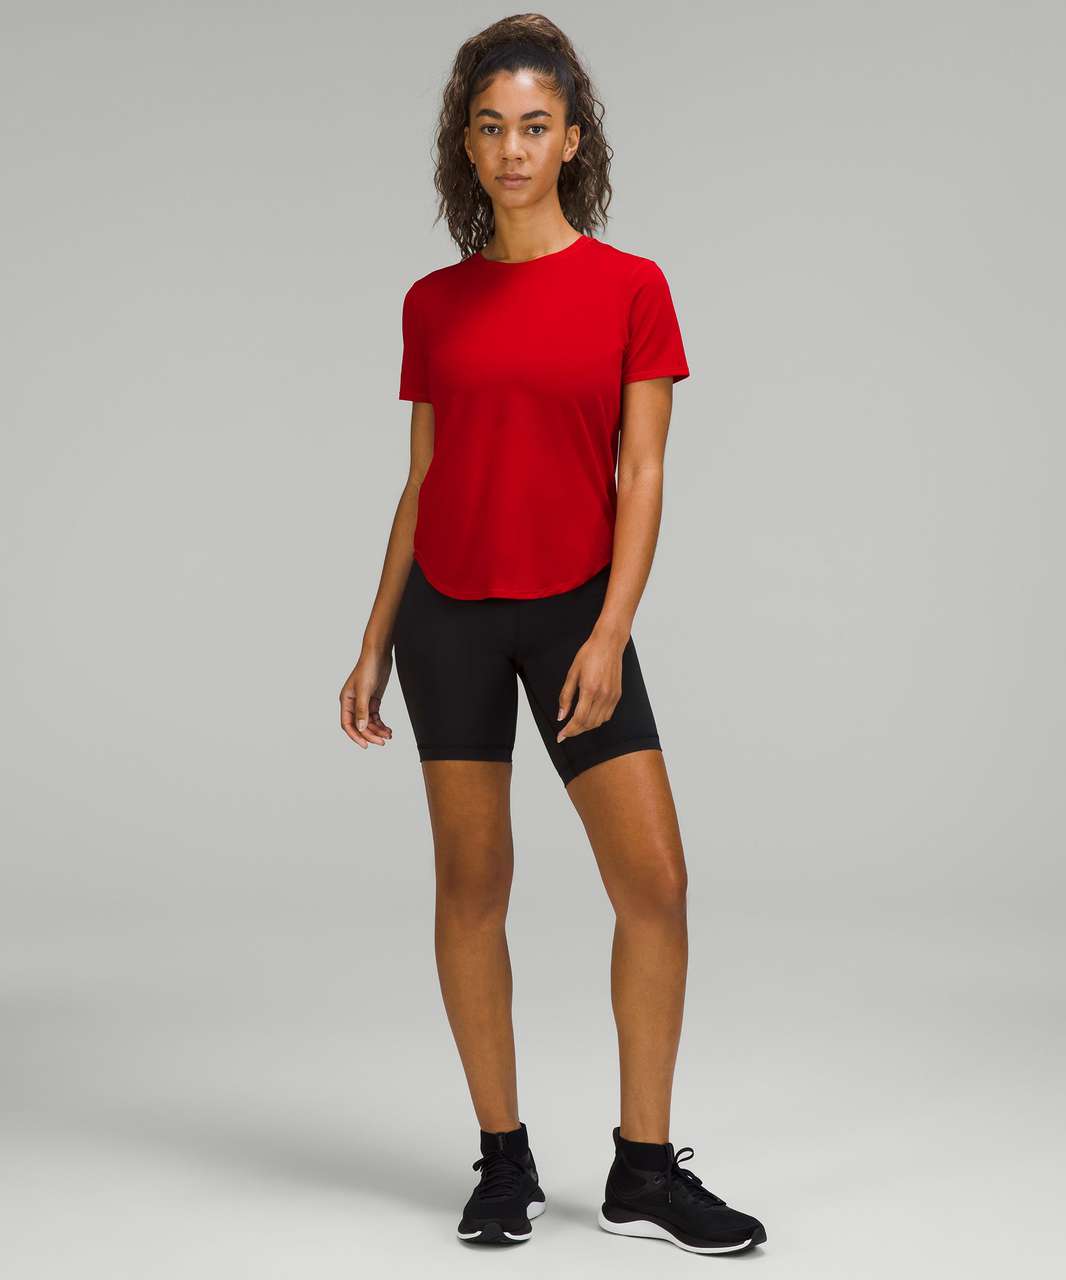 Lululemon High-Neck Running and Training T-Shirt - Dark Red